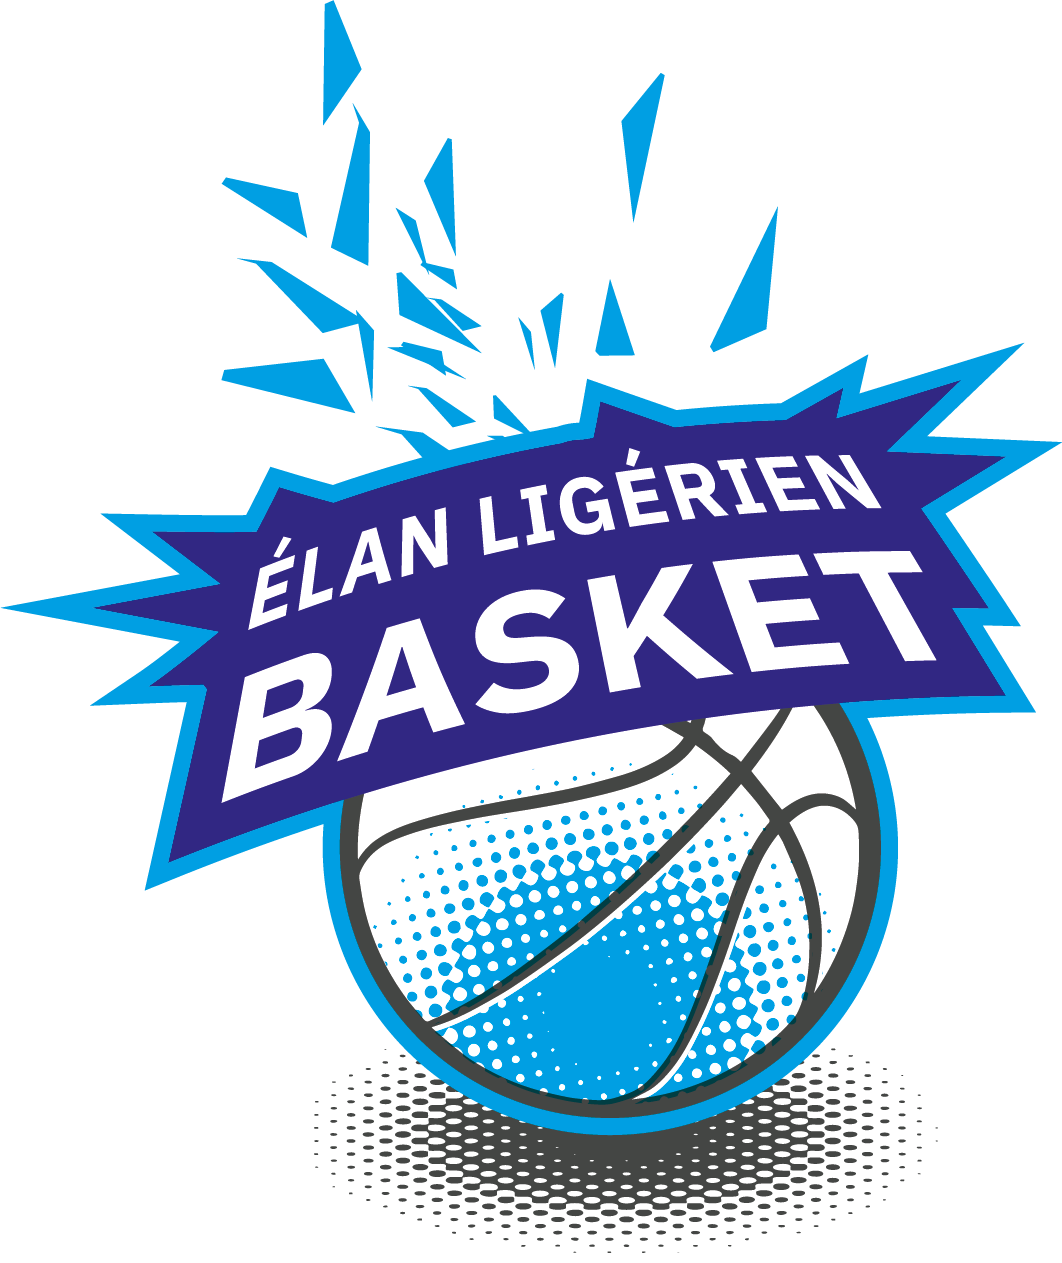 Elan Ligerien Basket - ELB49